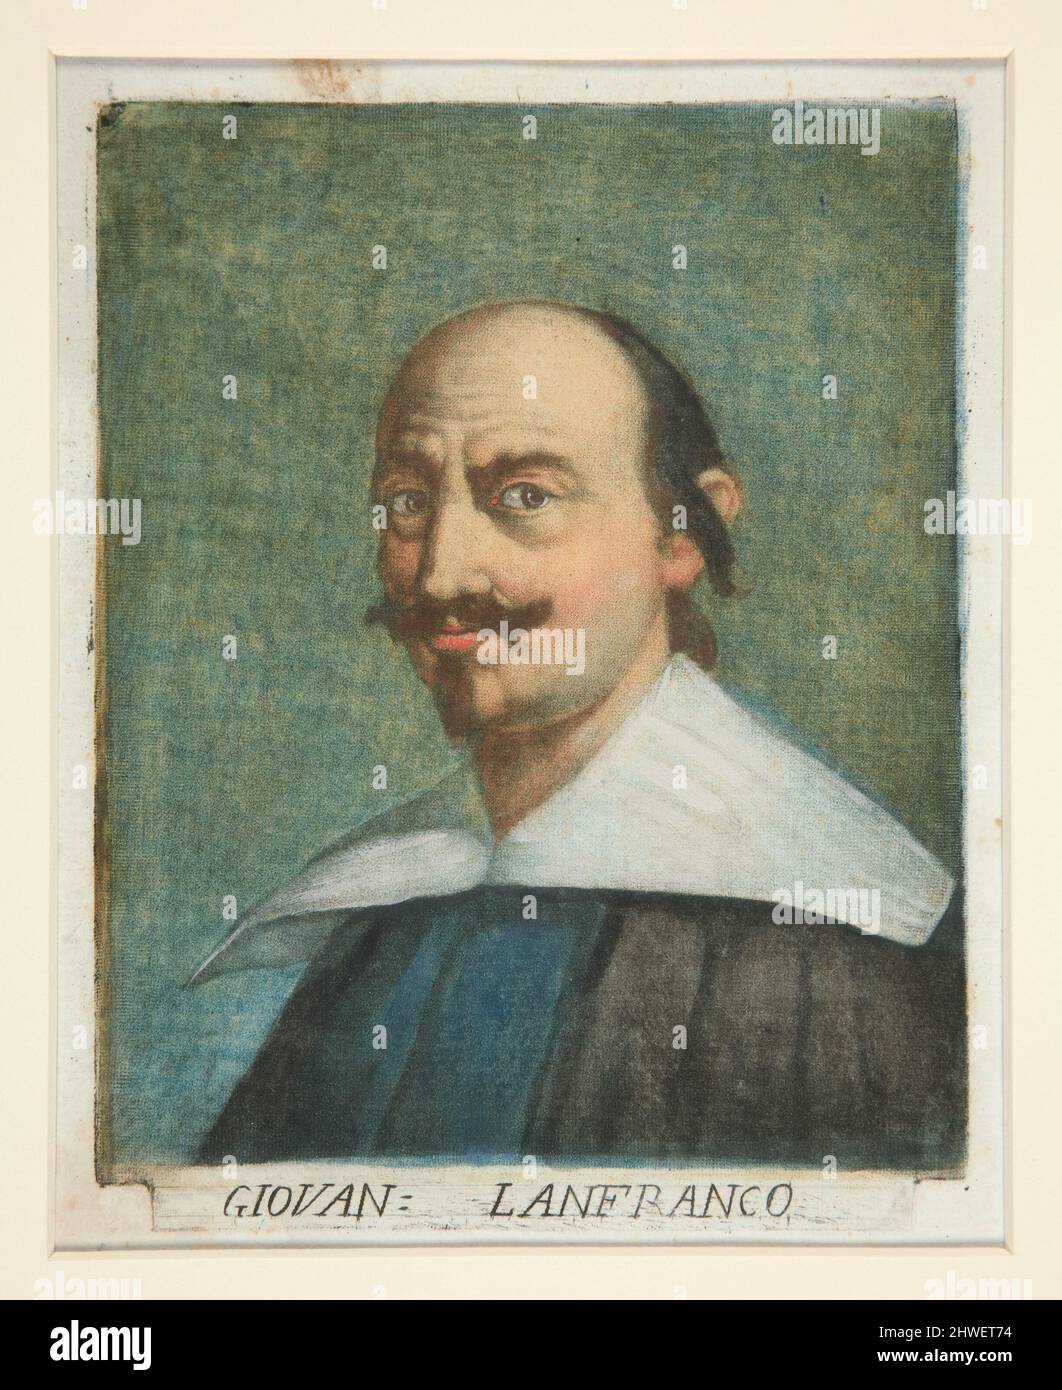 Giovanni Lanfranco, from Ritratti di pittori (Portraits of Painters).  Artist: Carlo Lasinio, Italian, 1759–1838 Stock Photo